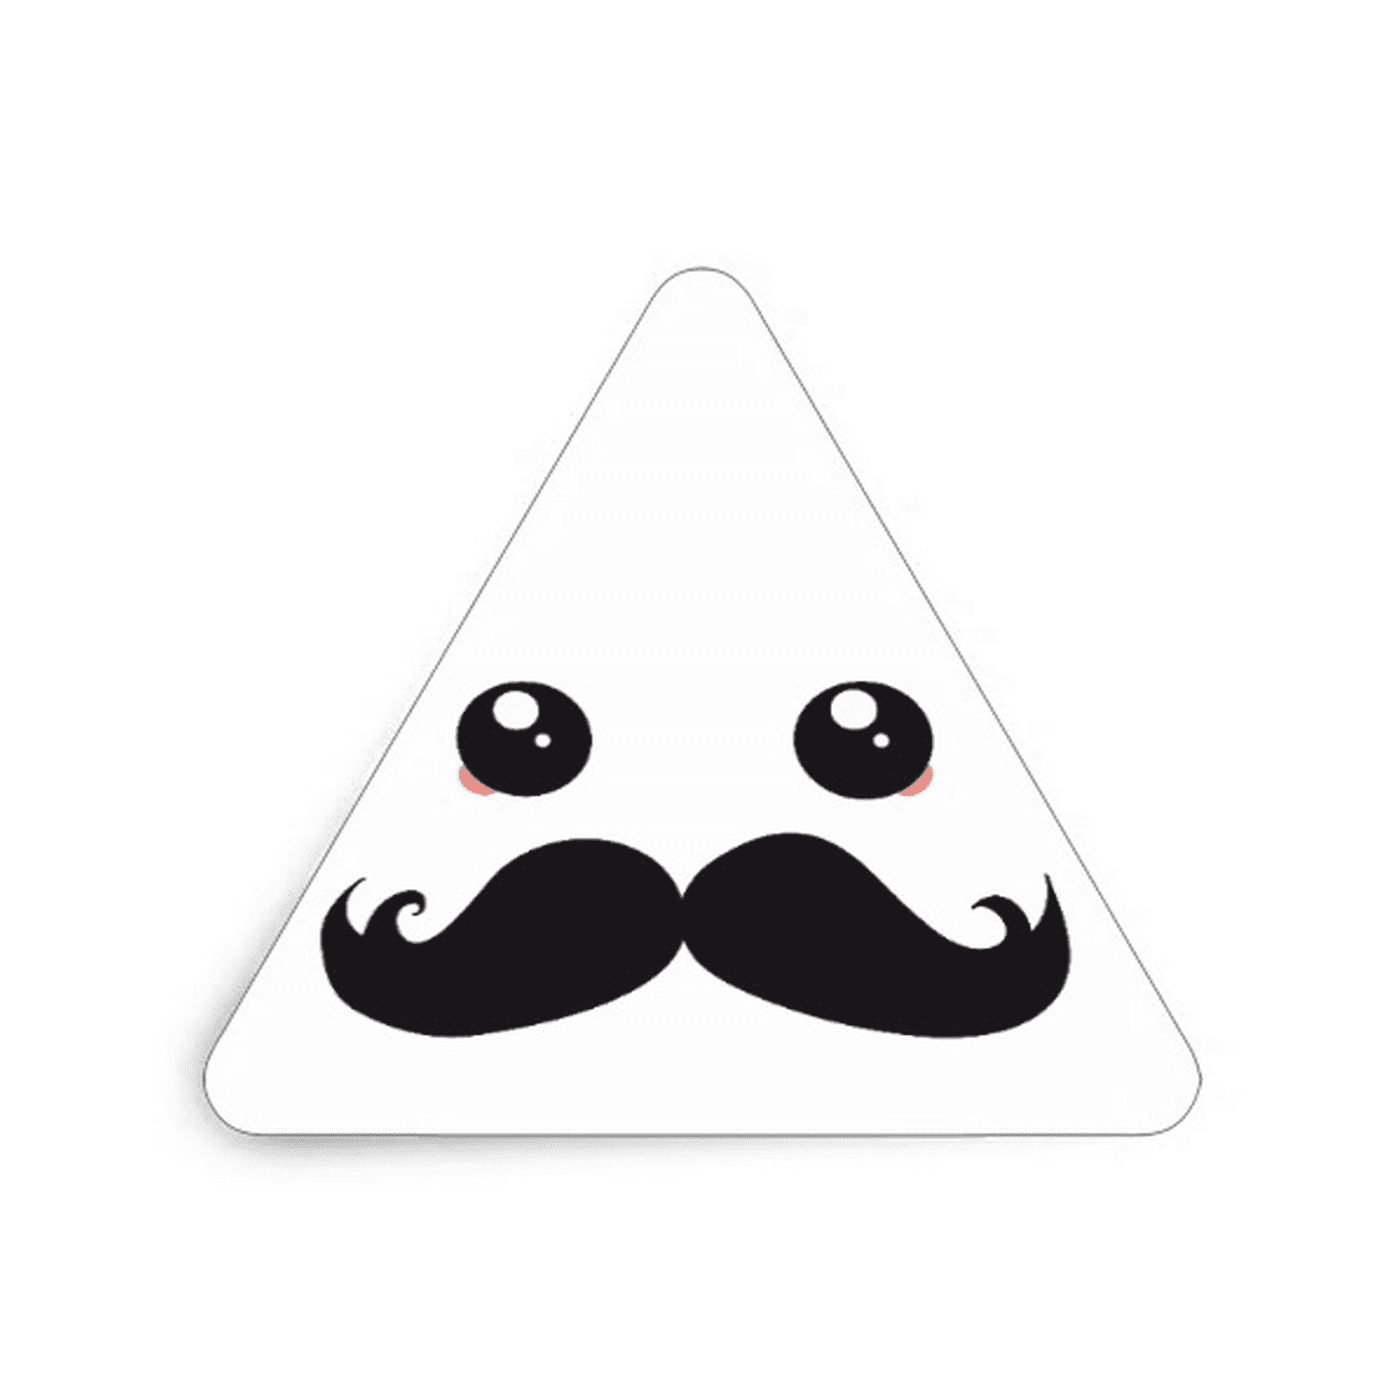   Un autocollant triangulaire avec une moustache 